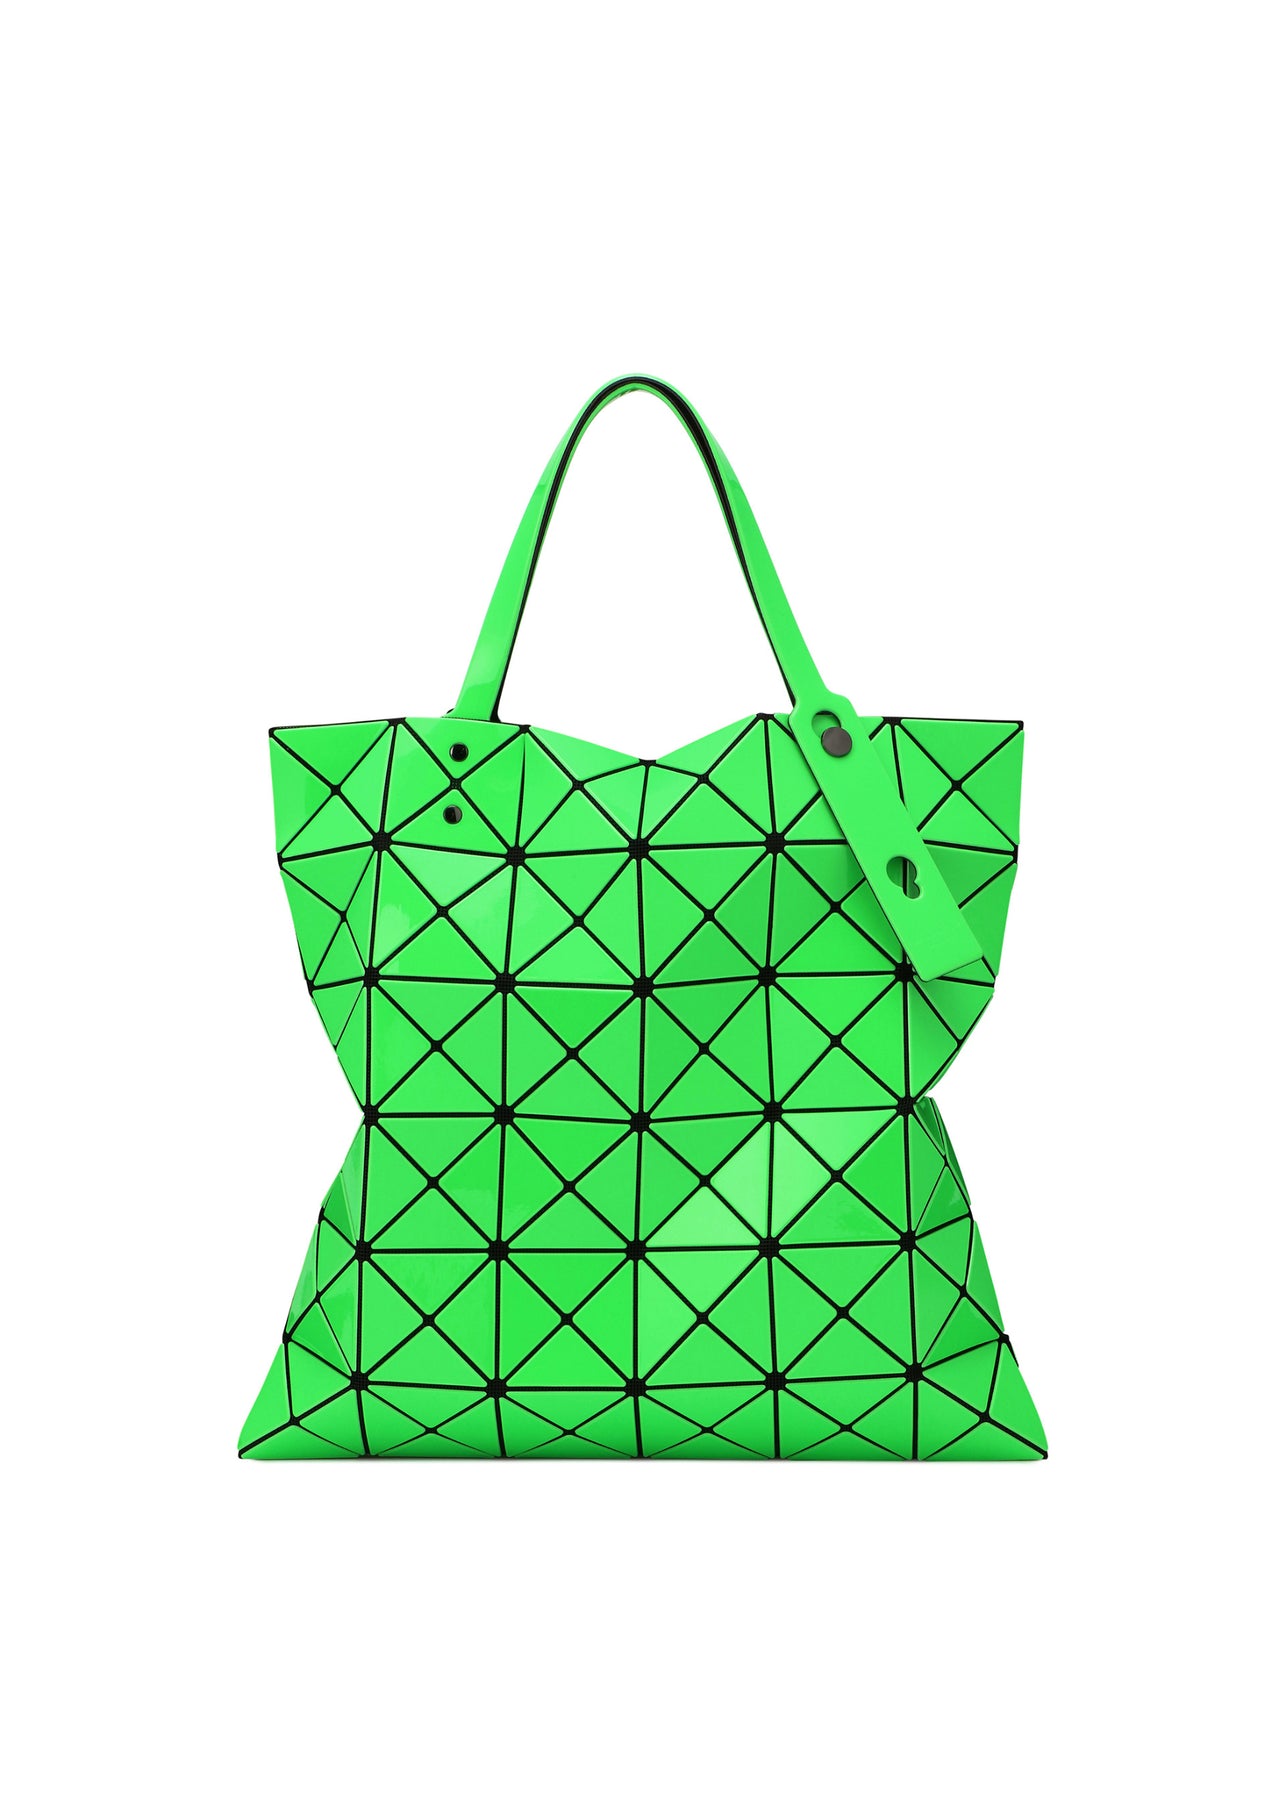 BAO BAO ISSEY MIYAKE Lucent Gloss Tote Bag – MoMA Design Store